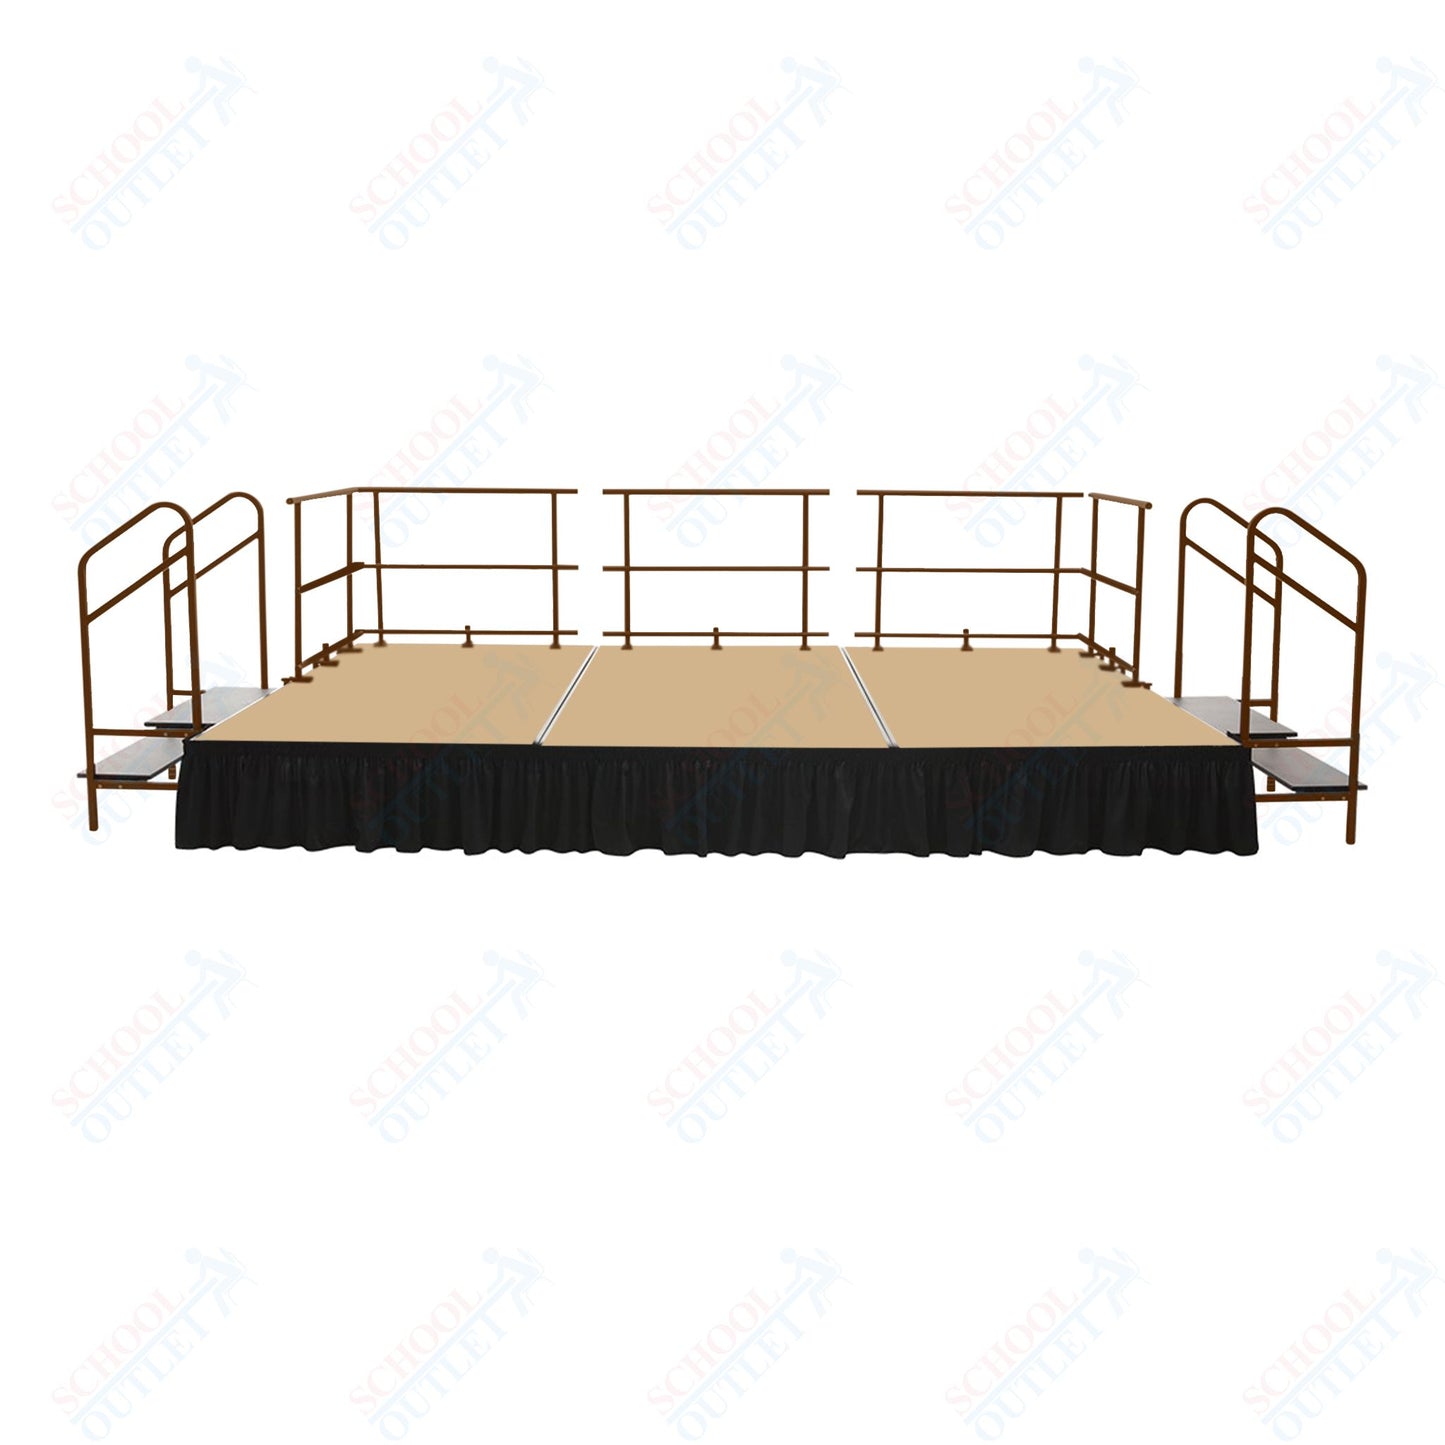 AmTab Fixed Height Stage Set - Carpet Top - 16'W x 32'L x 2'H (192"W x 384"L x 24"H)  (AmTab AMT-STS163224C)